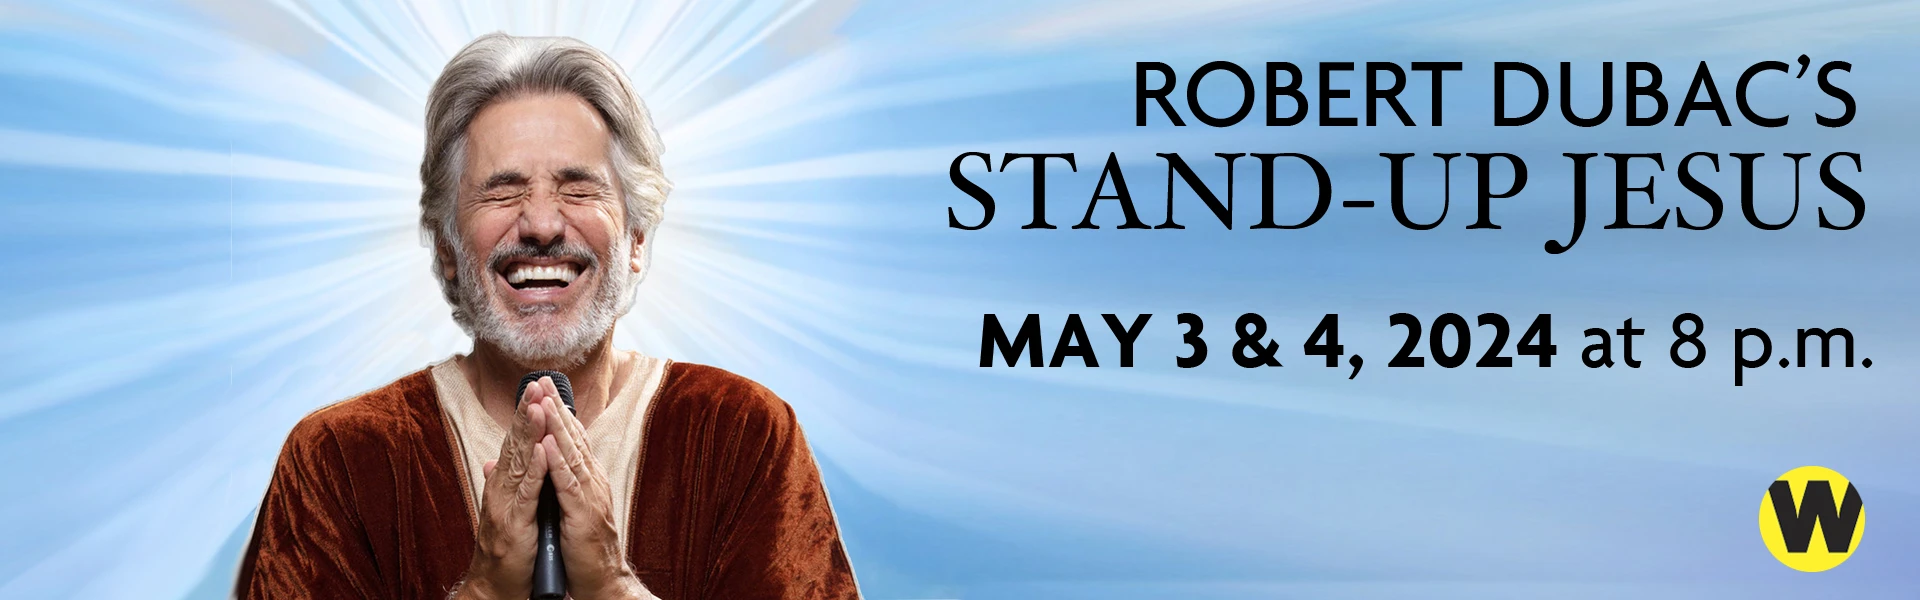 Robert Dubac's Stand-Up Jesus, May 3 & 4 at 8 p.m.